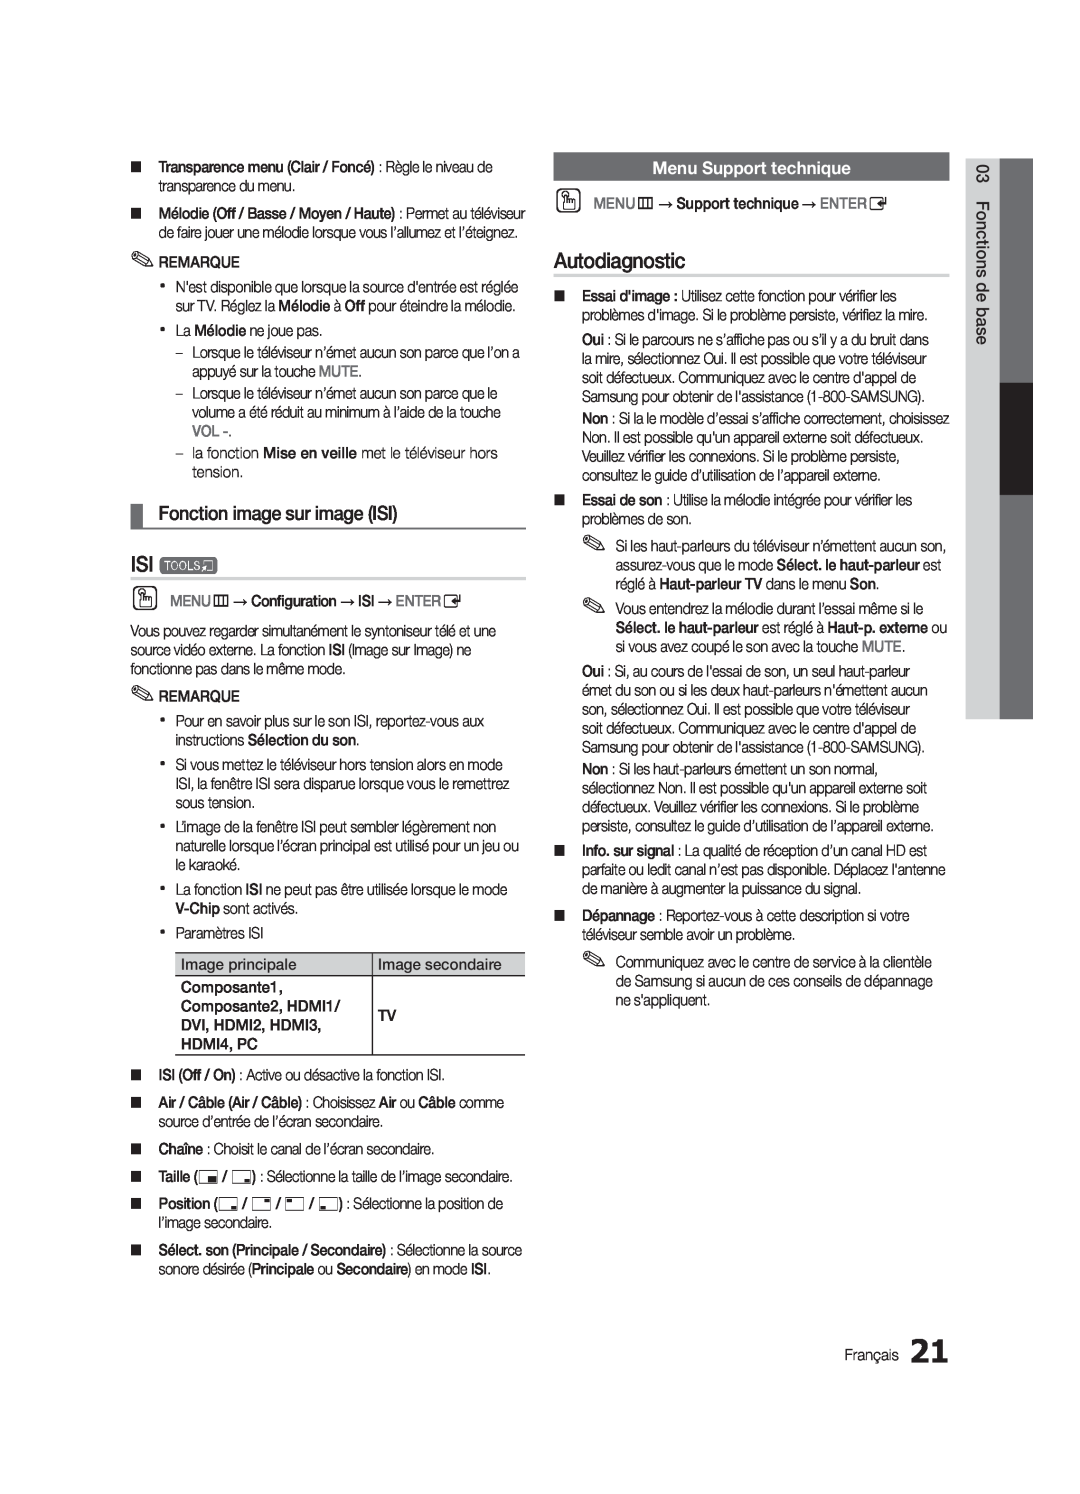 Samsung LN32C550 user manual ISI t, Autodiagnostic, Fonction image sur image ISI, Menu Support technique 